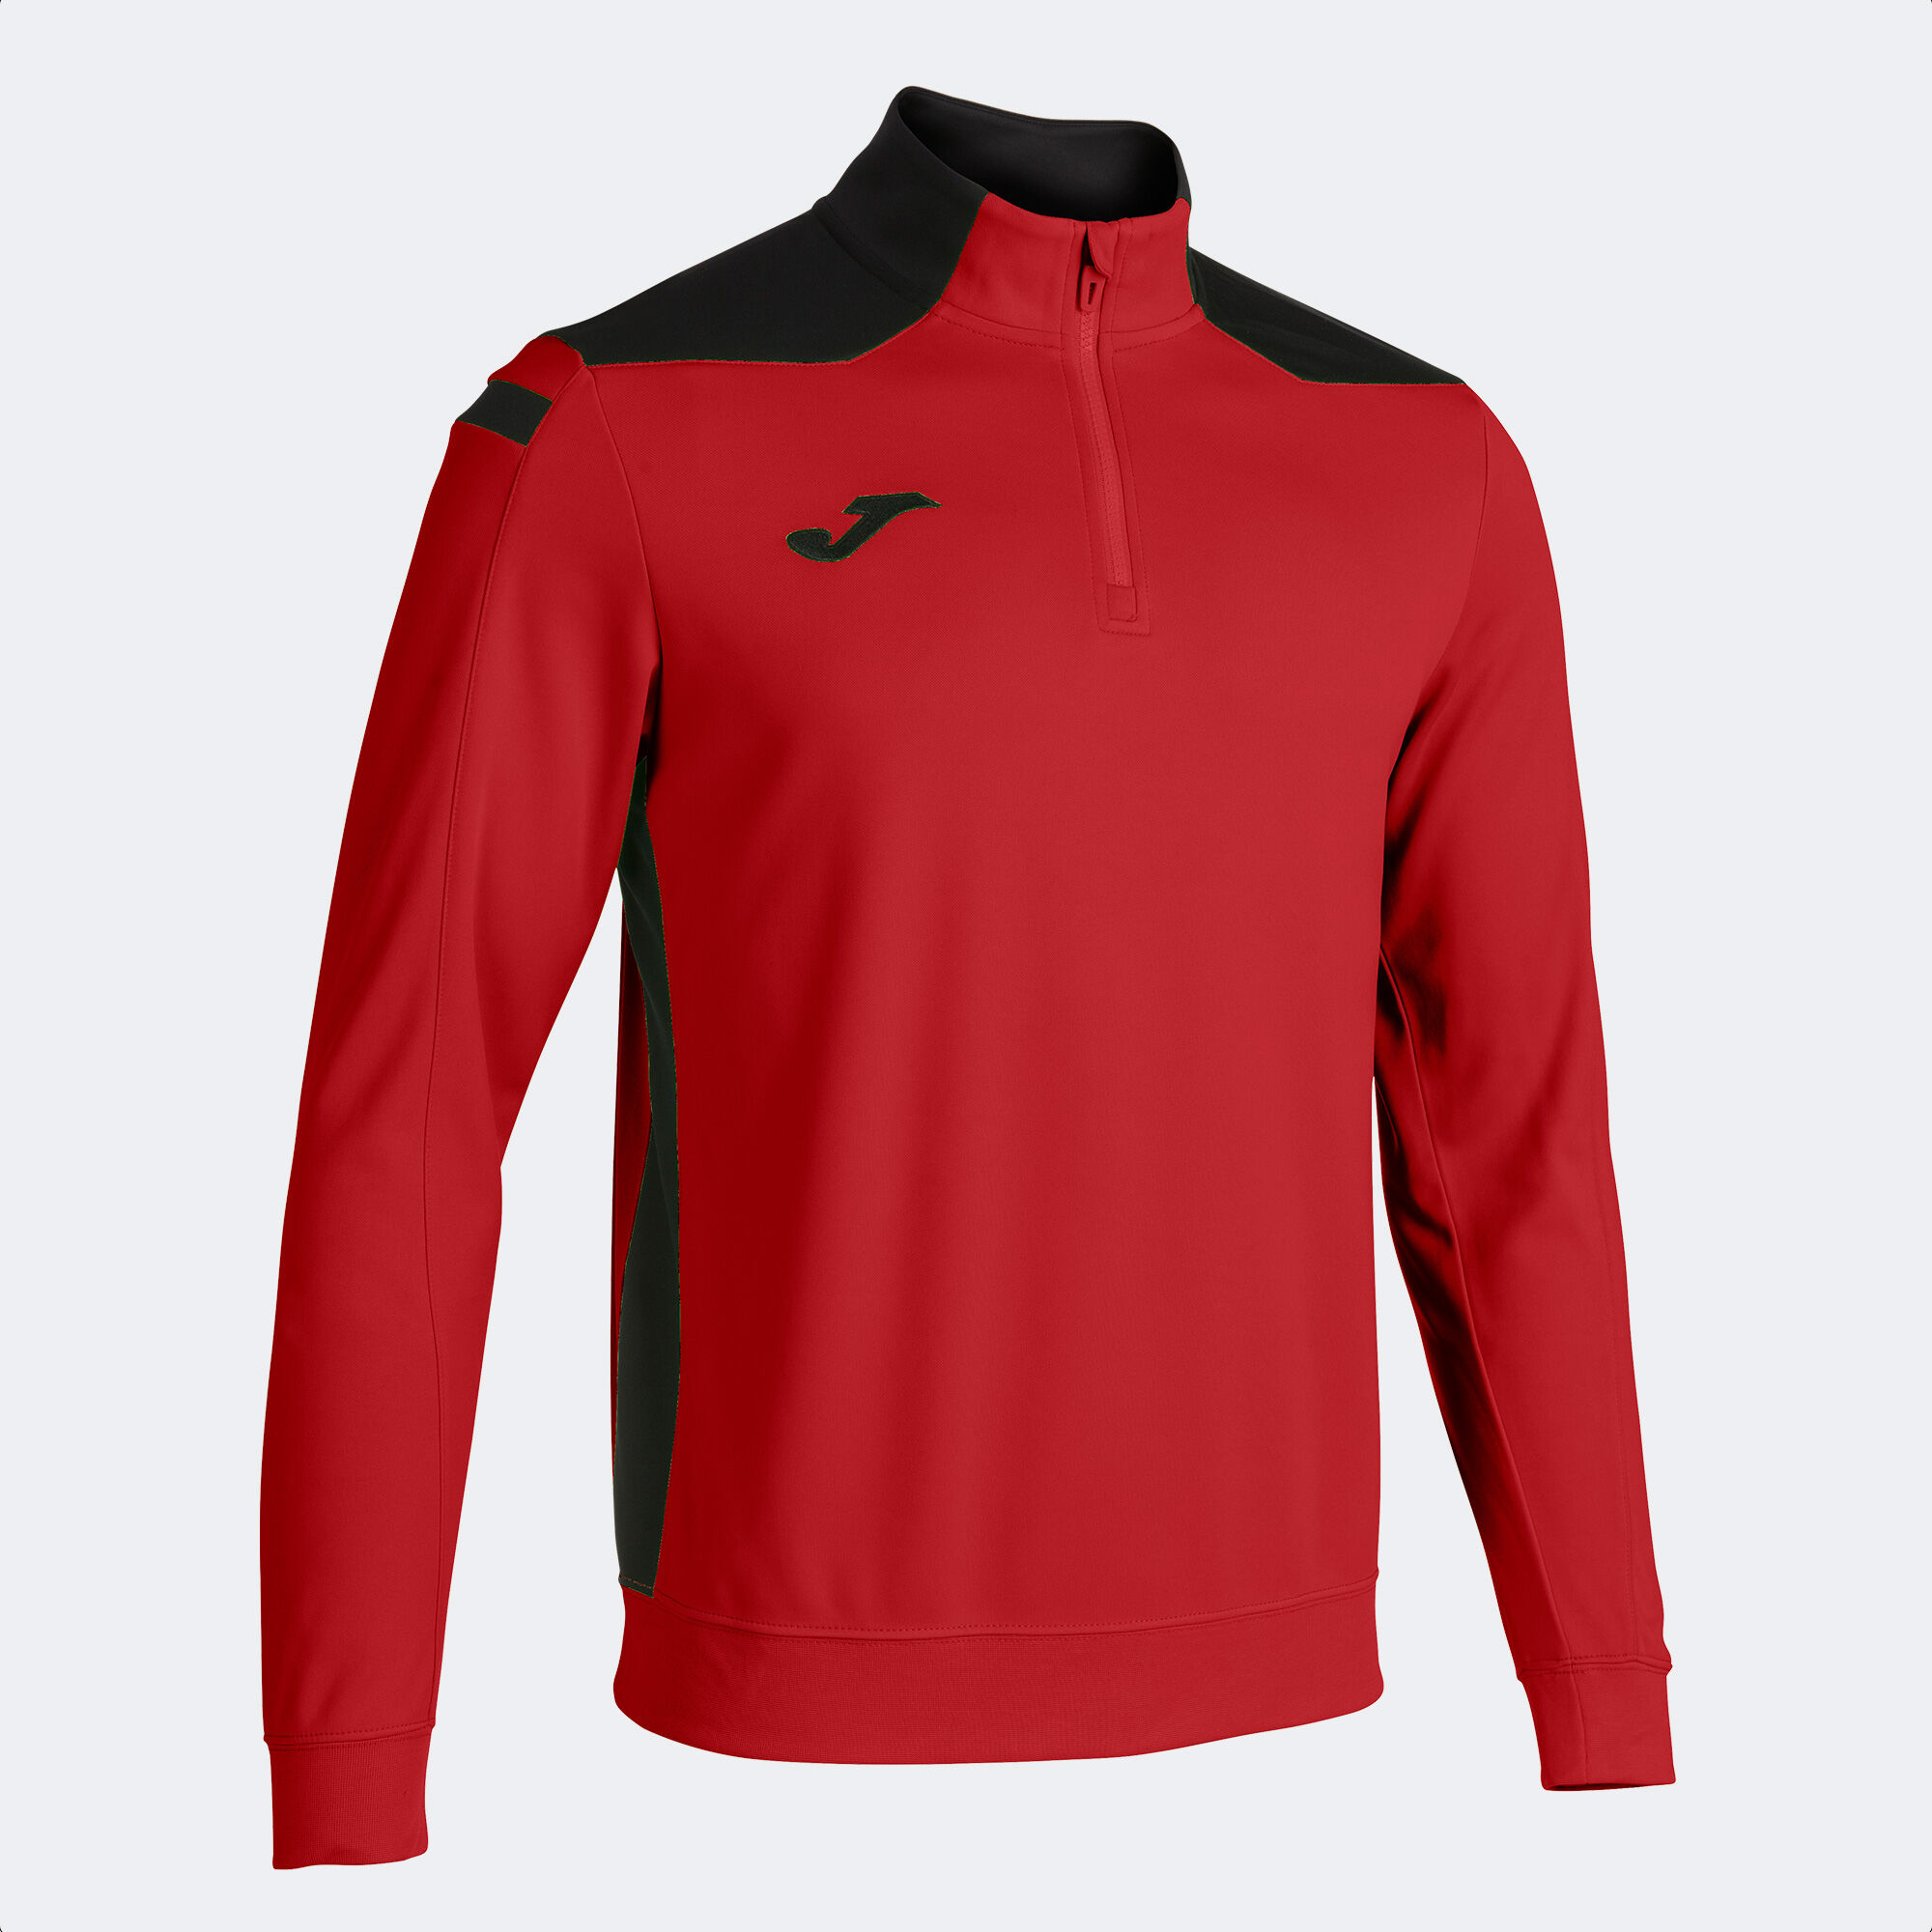 Sweat-shirt homme Championship VI rouge noir